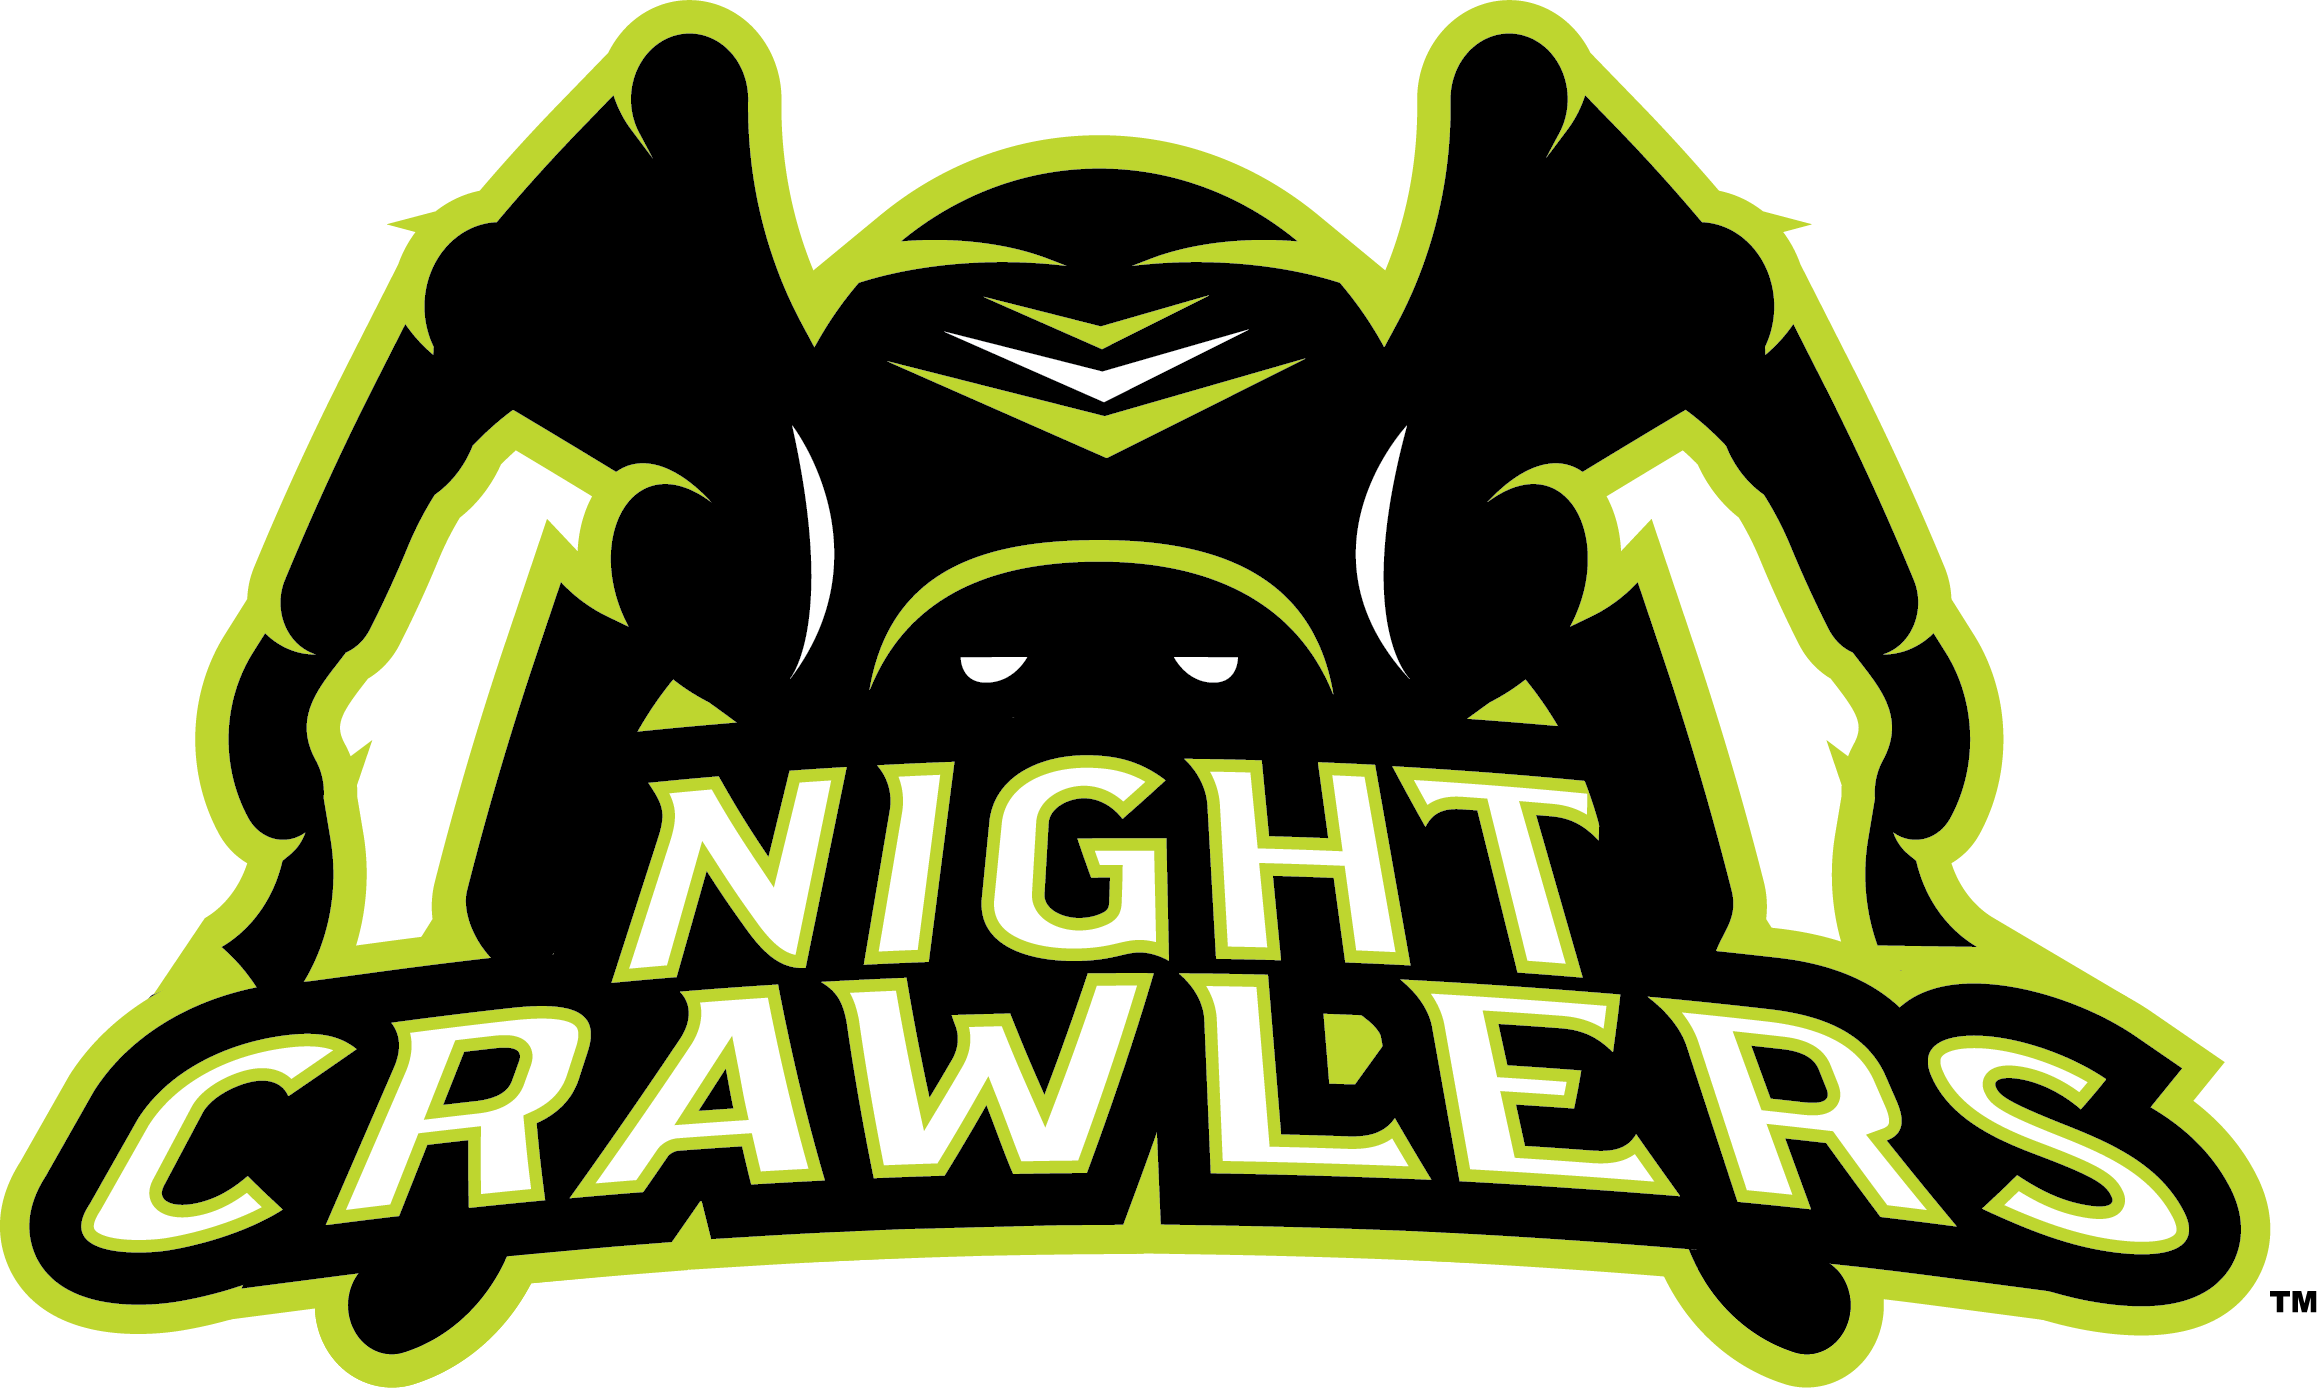 Tampa Nightcrawlers - A7FL